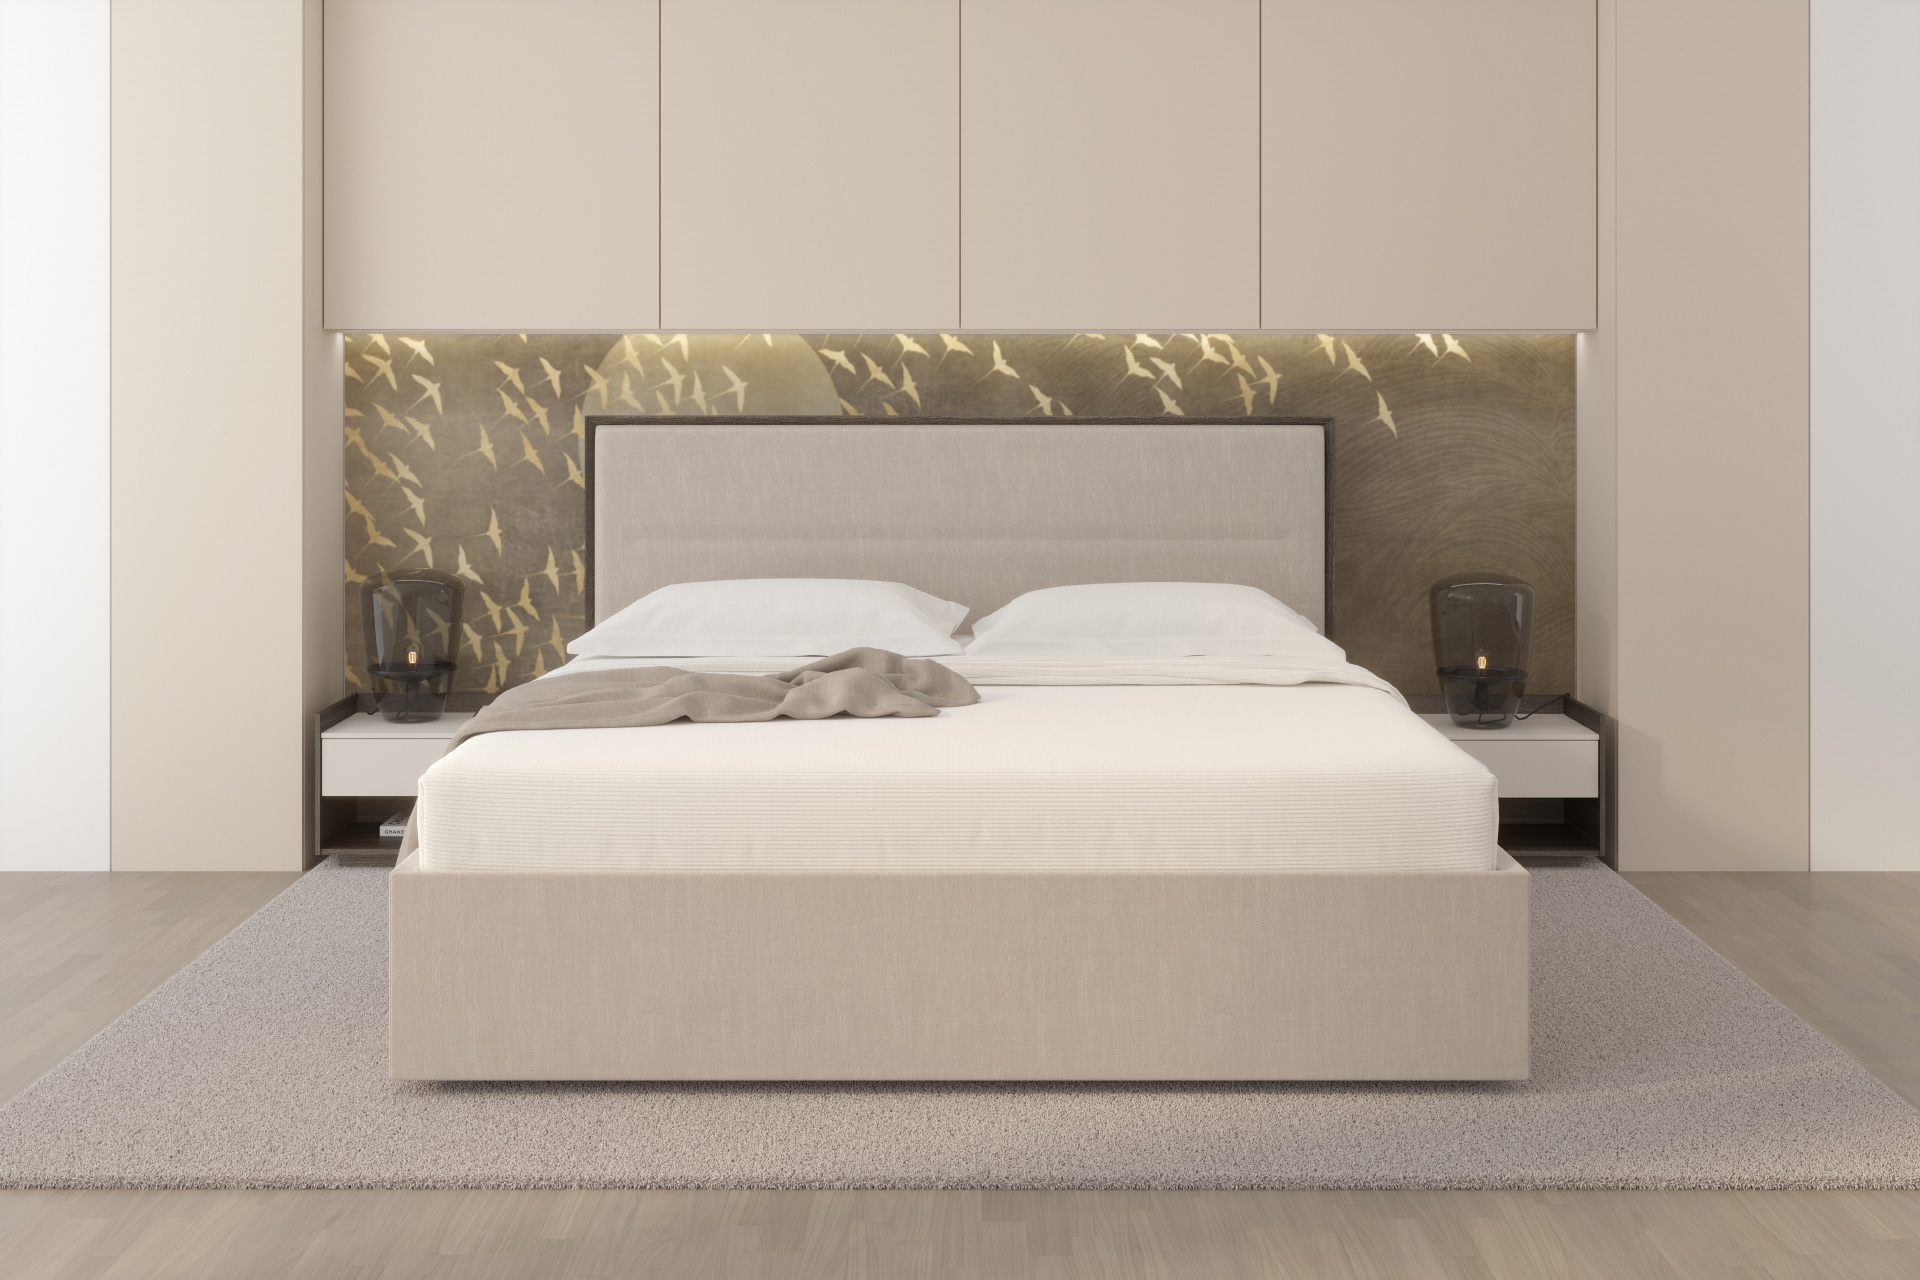 Hanák ložnice MADISON charakteristická svou precizně zpracovanou rámovou postelí